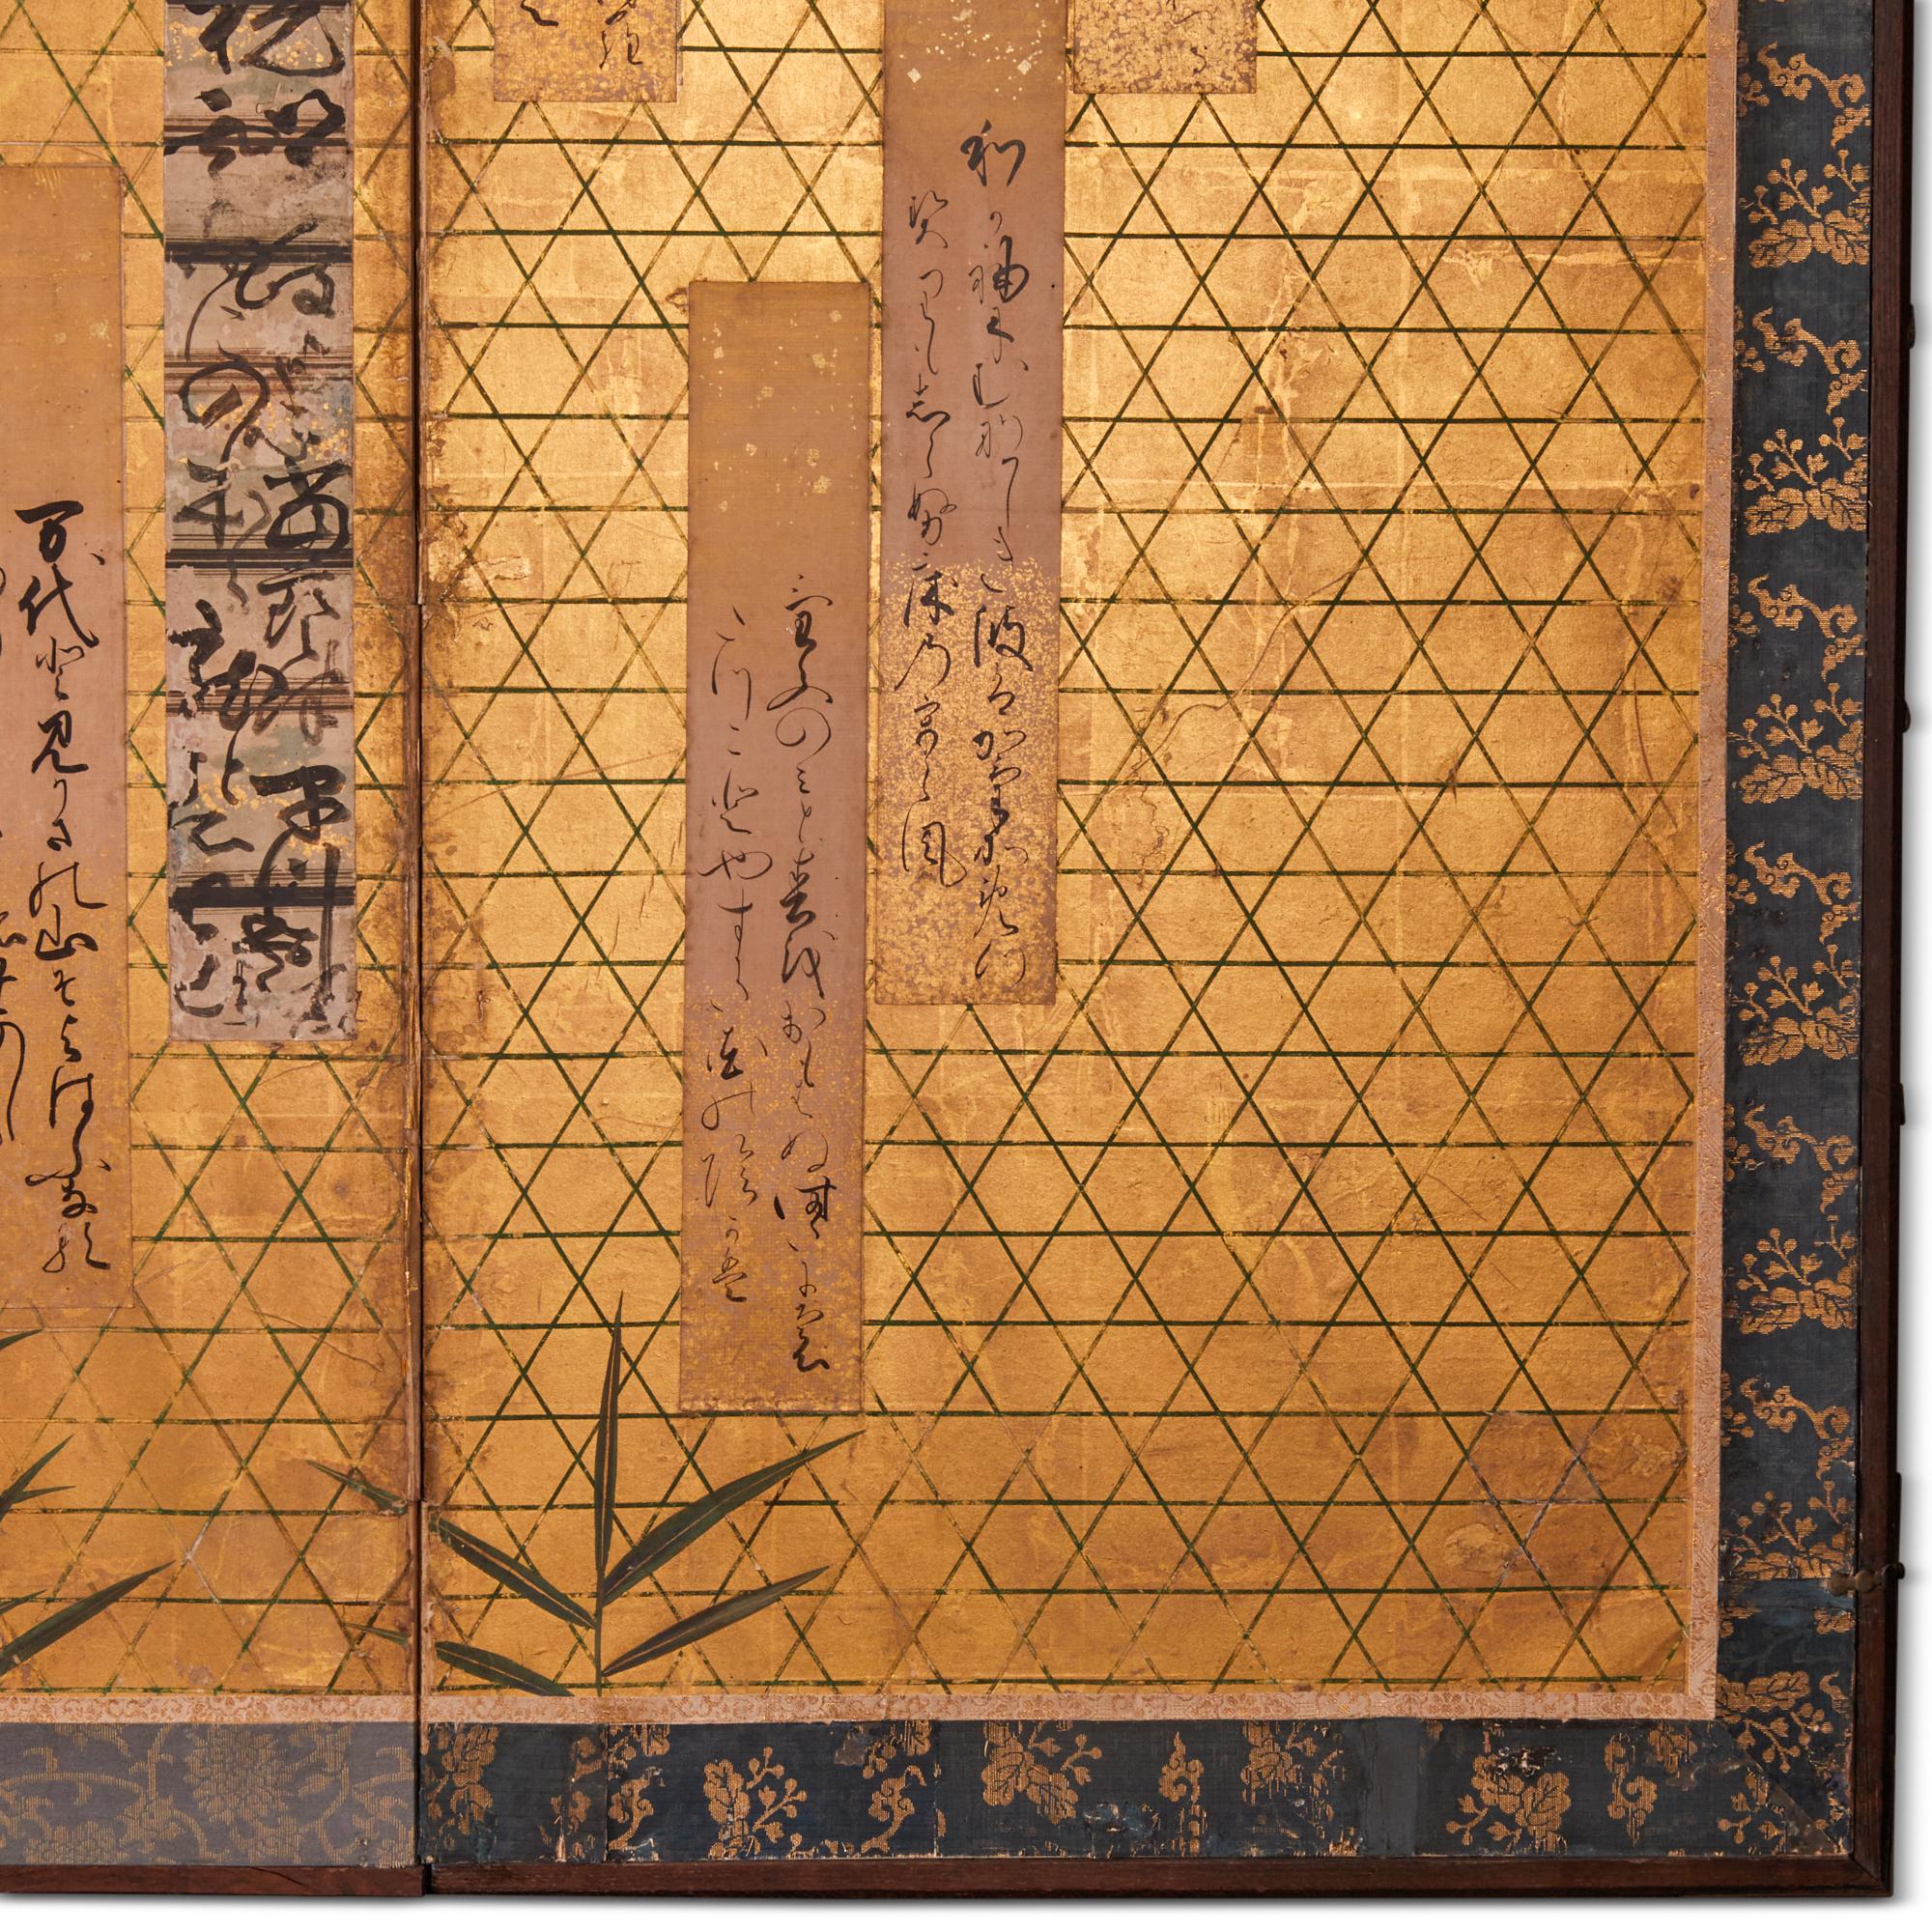 Des rubans de poèmes calligraphiés du 17e siècle sont montés sur un paravent du 18e siècle avec un motif de bambou tressé.  Ces poèmes sont des poèmes aristocratiques Waka (plus longs que des haïkus) tirés de l'anthologie intitulée 